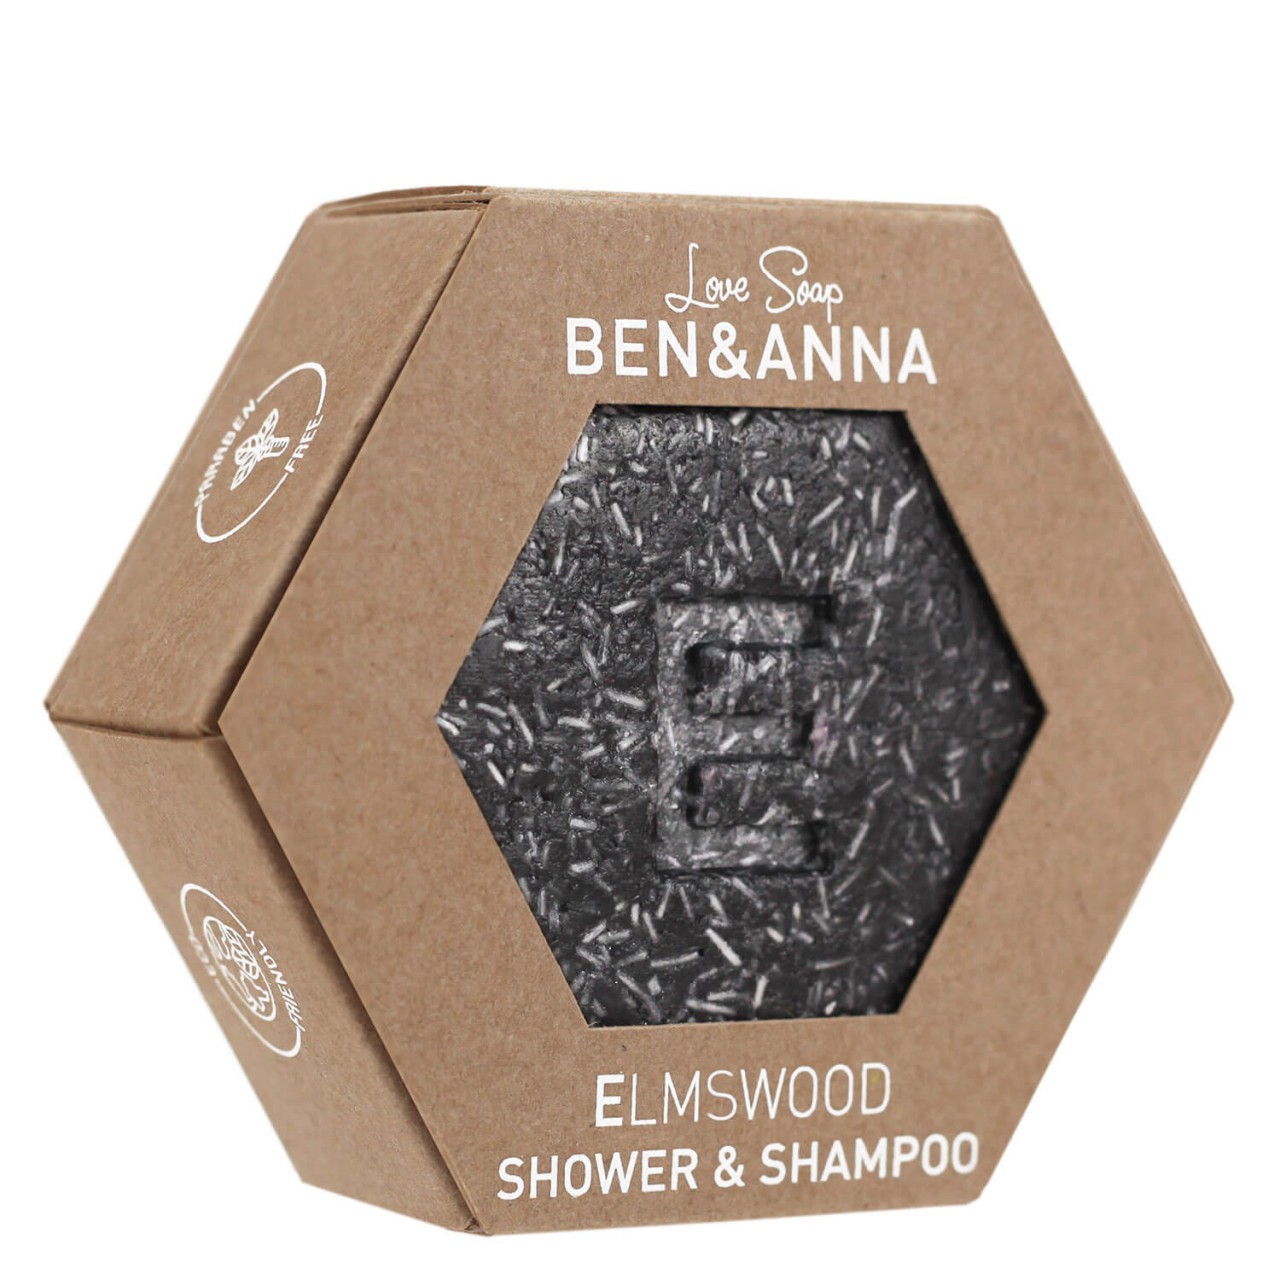 BEN&ANNA - Elmswood Shower & Shampoo von BEN&ANNA